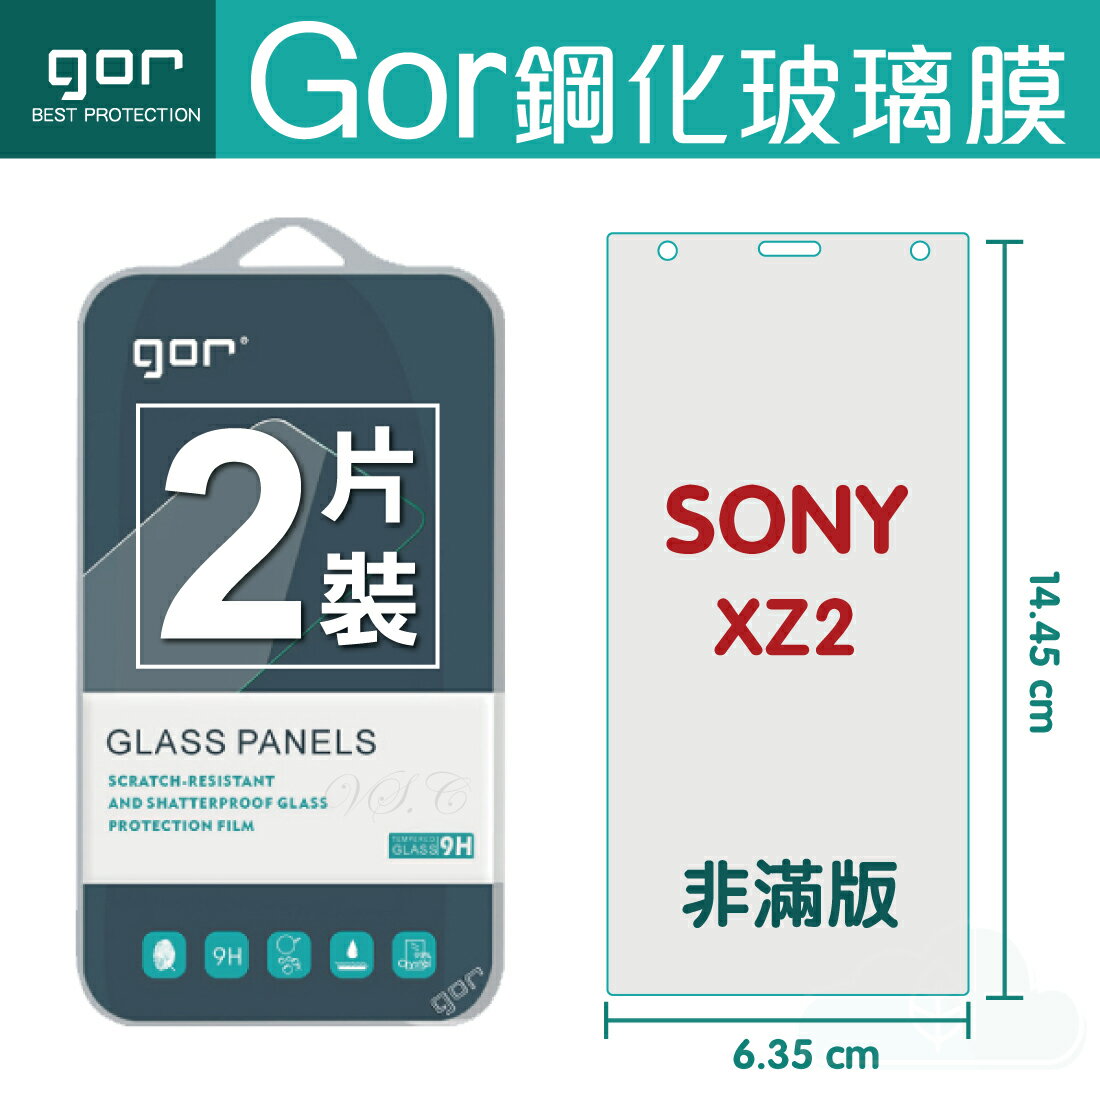 【SONY】GOR 9H SONY Xperia XZ2 鋼化 玻璃 保護貼 全透明非滿版 兩片裝【全館滿299免運費】